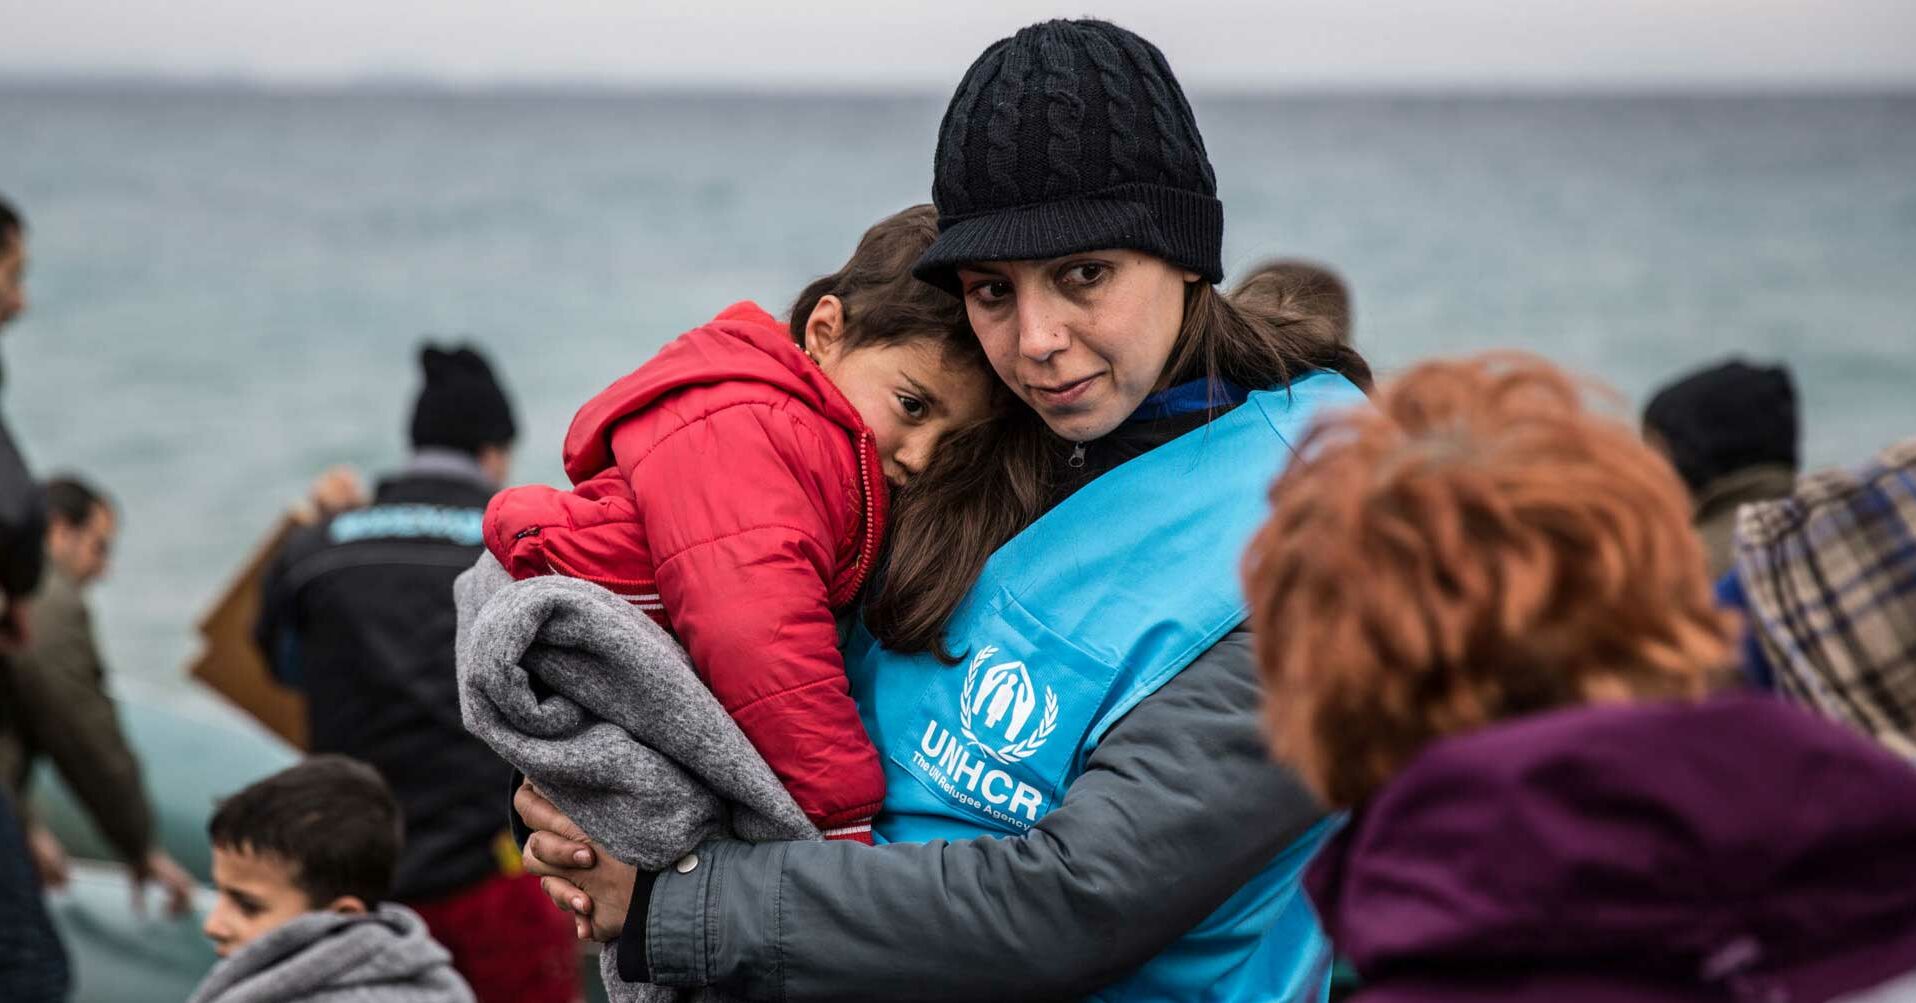 UNHCR Frau mit Kind im Arm, Grichenland, Mittelmeer RF237115_1920x1080.jpg